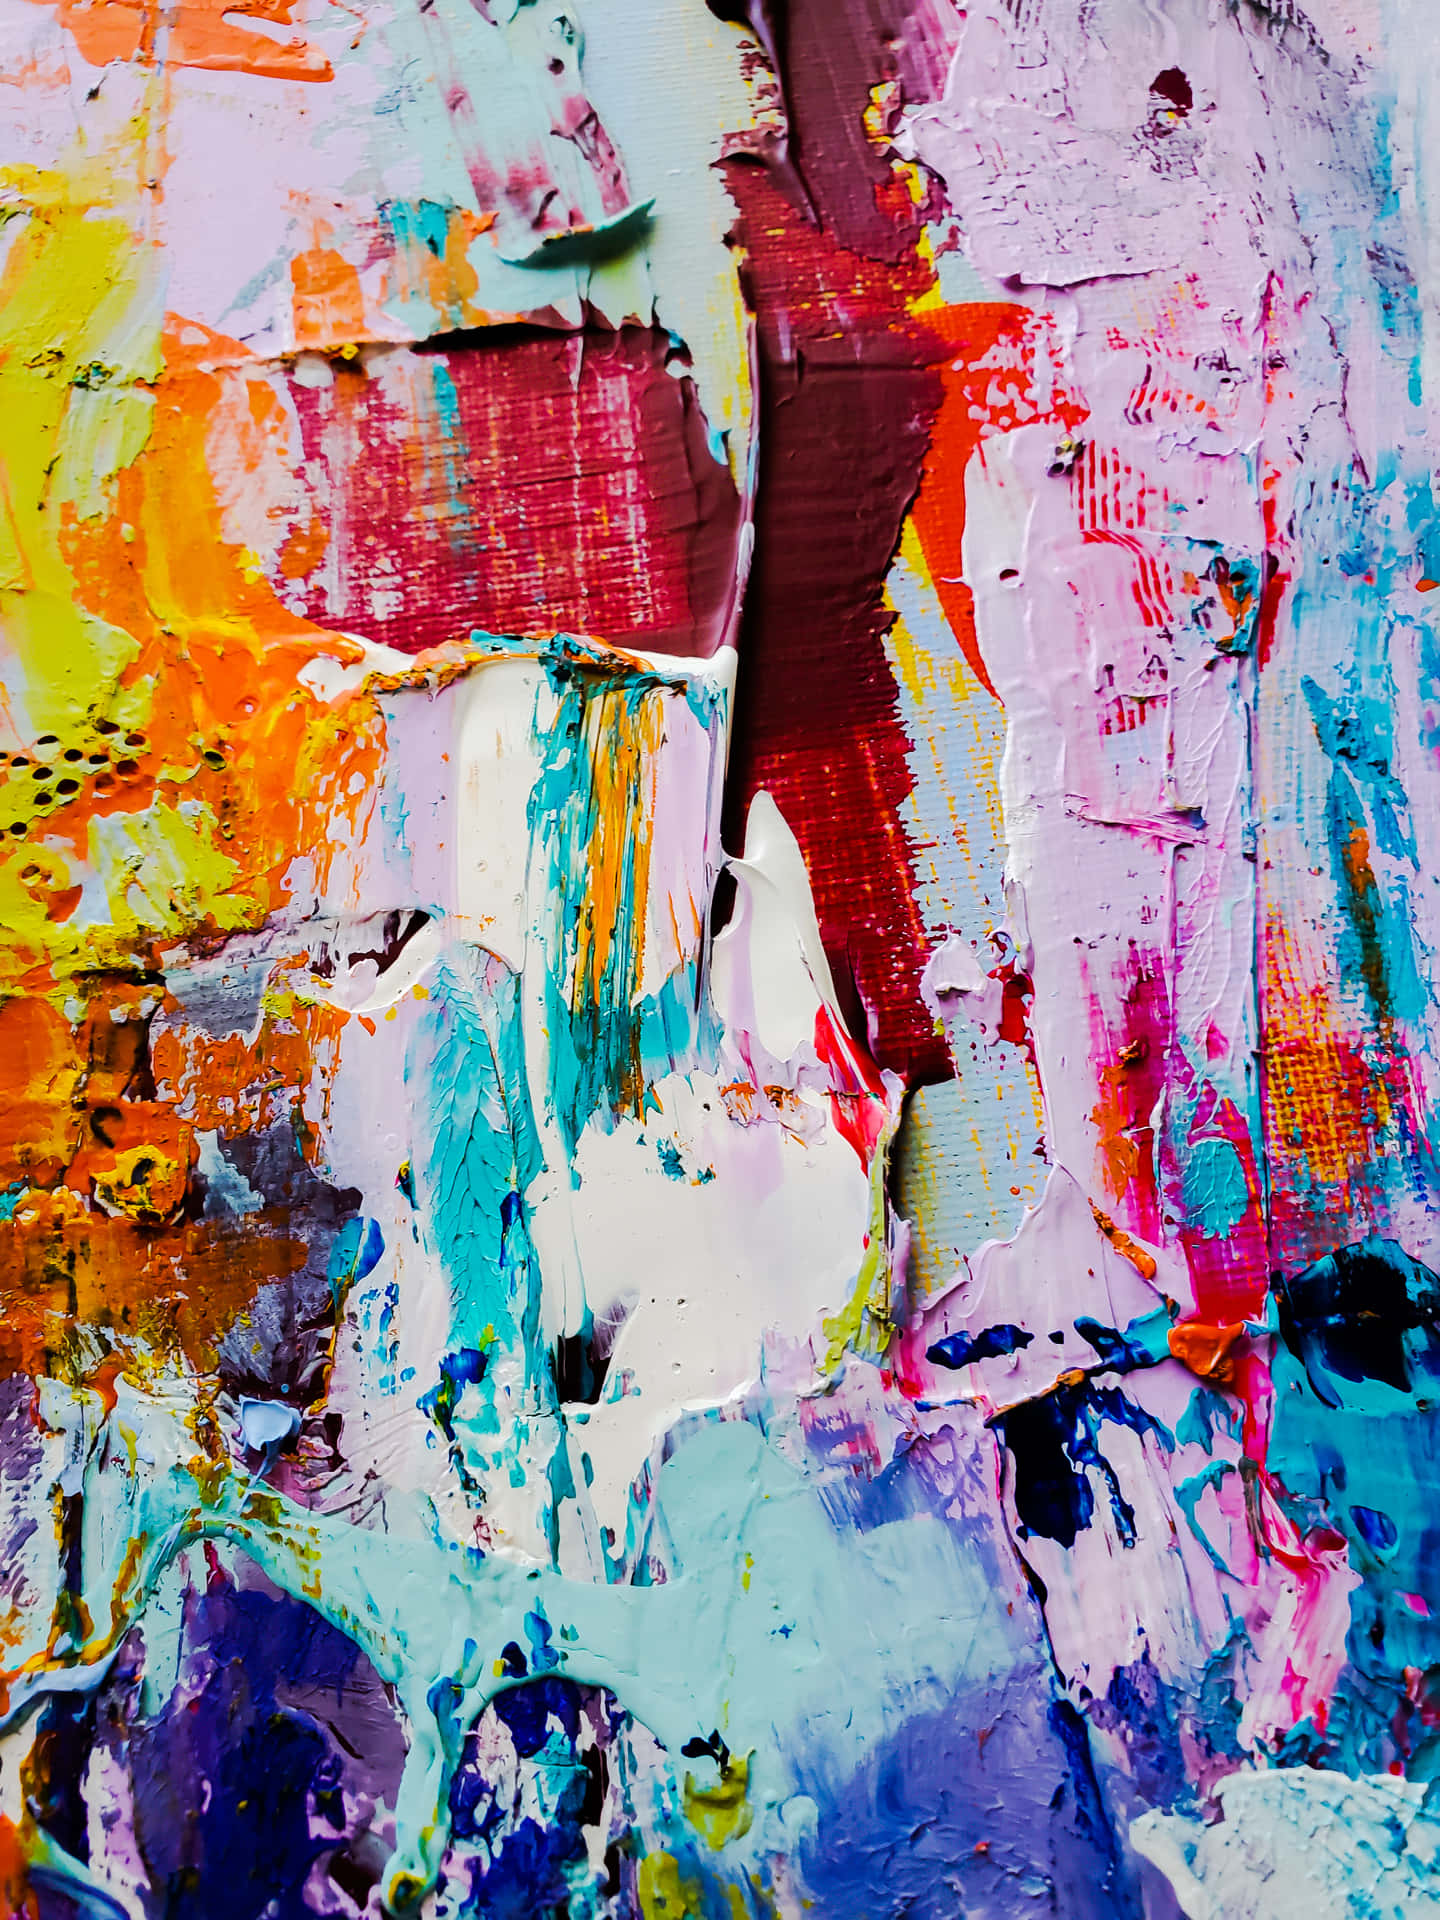 Lassensie Ihrer Fantasie Freien Lauf Mit Dieser Farbenfrohen Abstrakten Kunst. Wallpaper